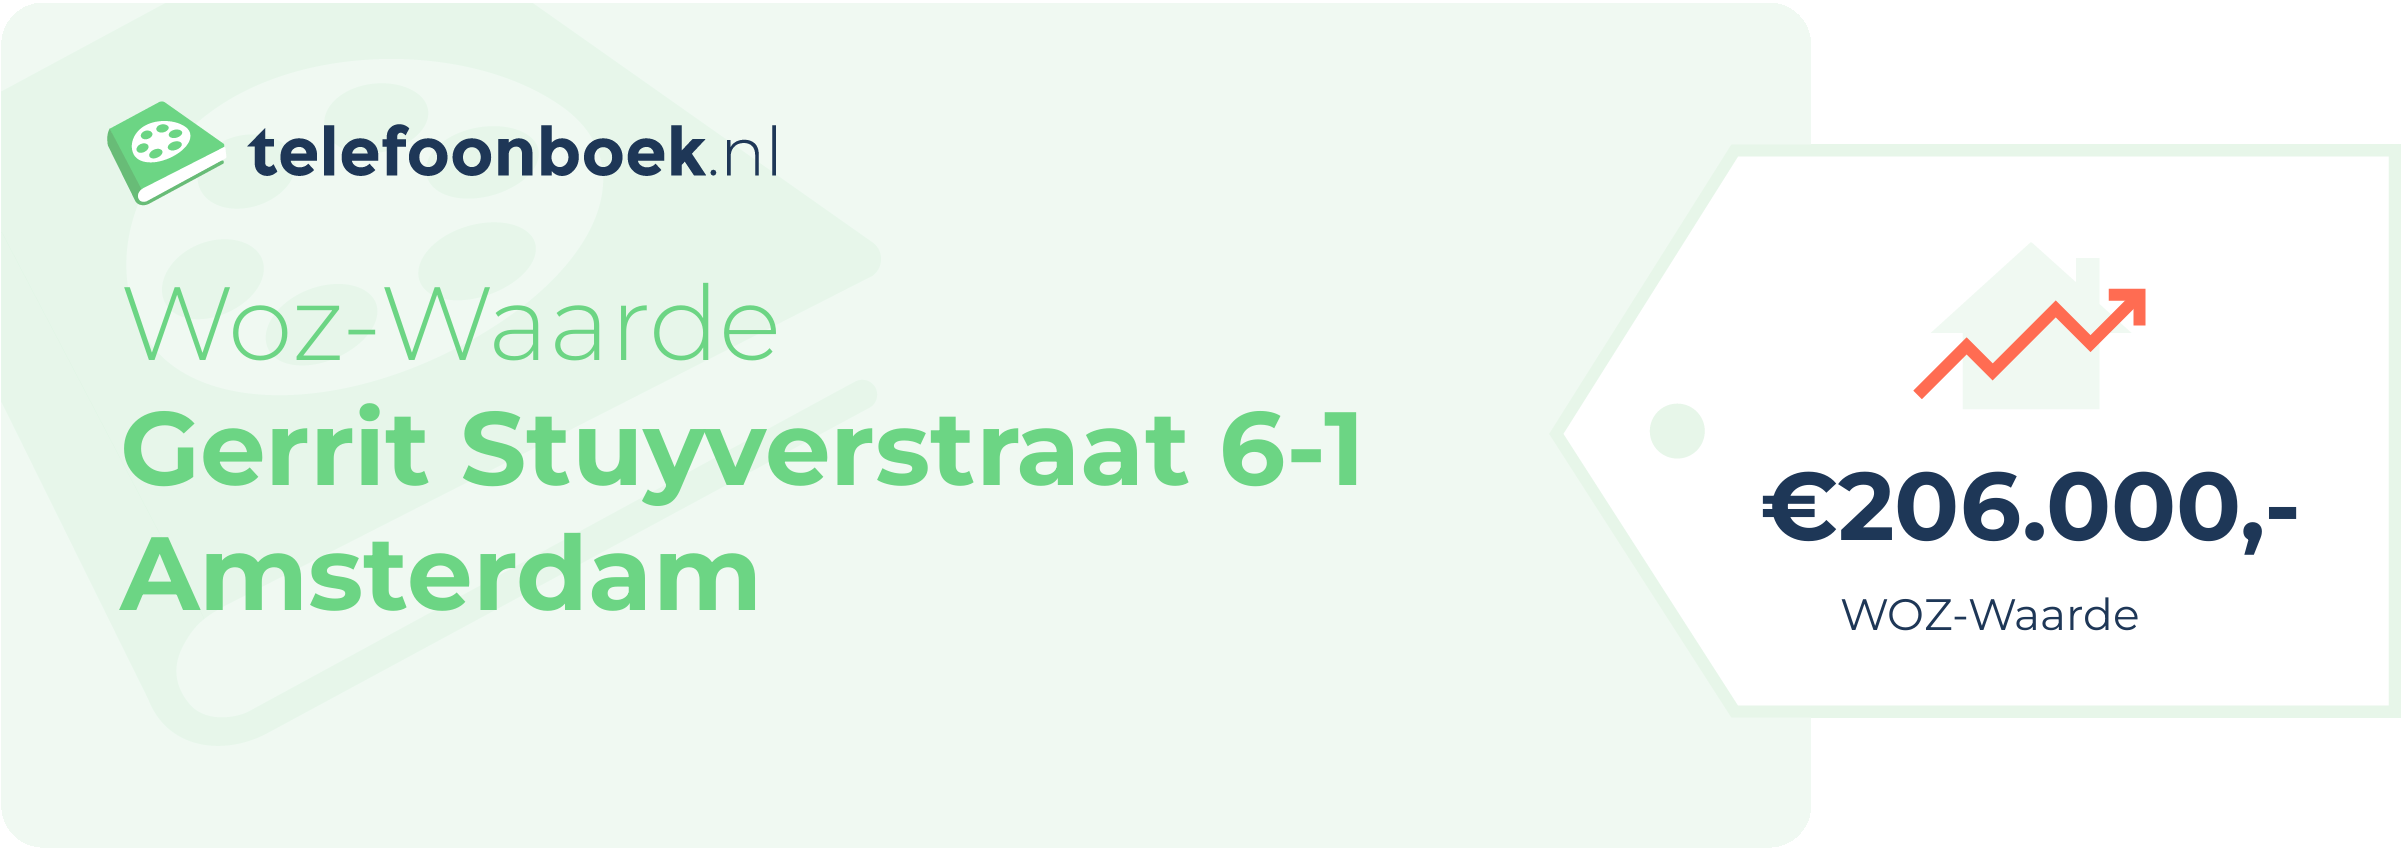 WOZ-waarde Gerrit Stuyverstraat 6-1 Amsterdam